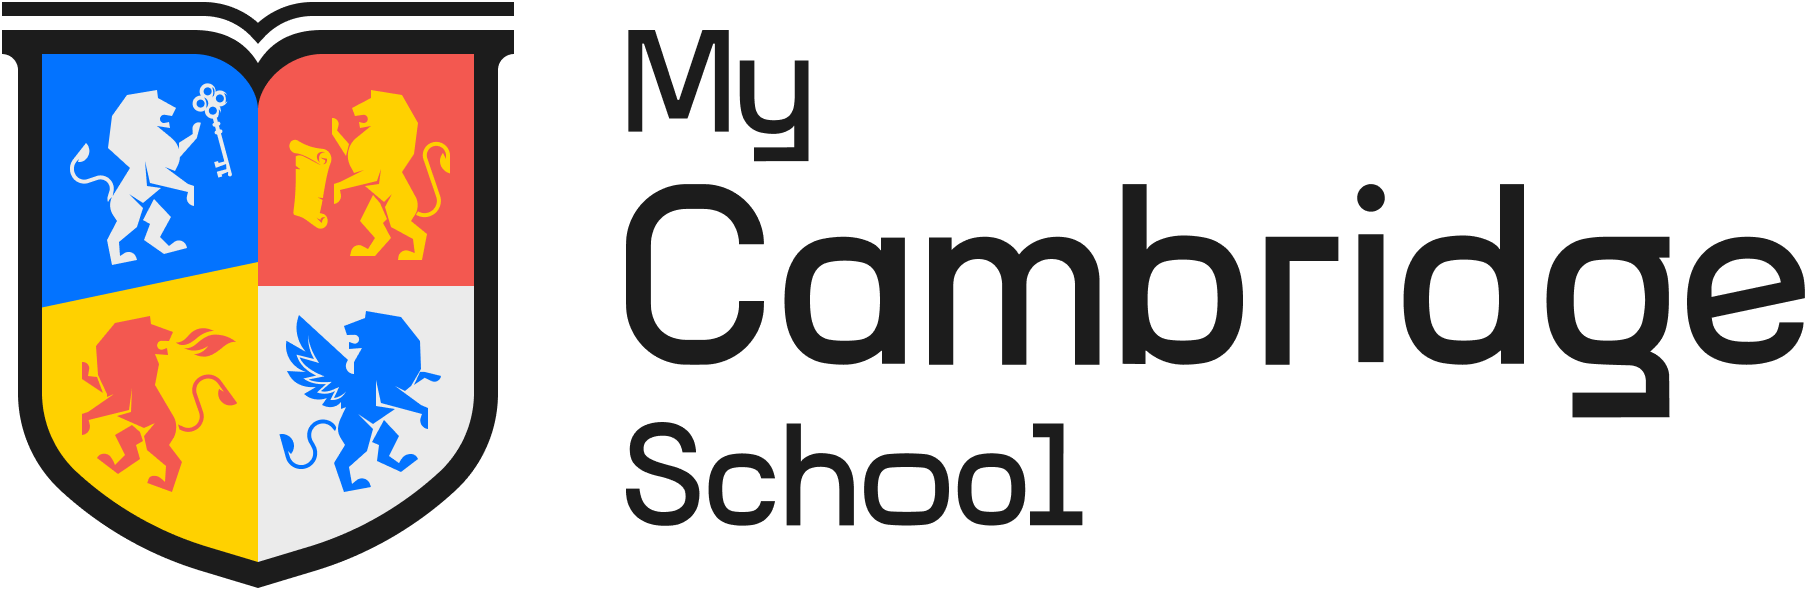 My Cambridge School